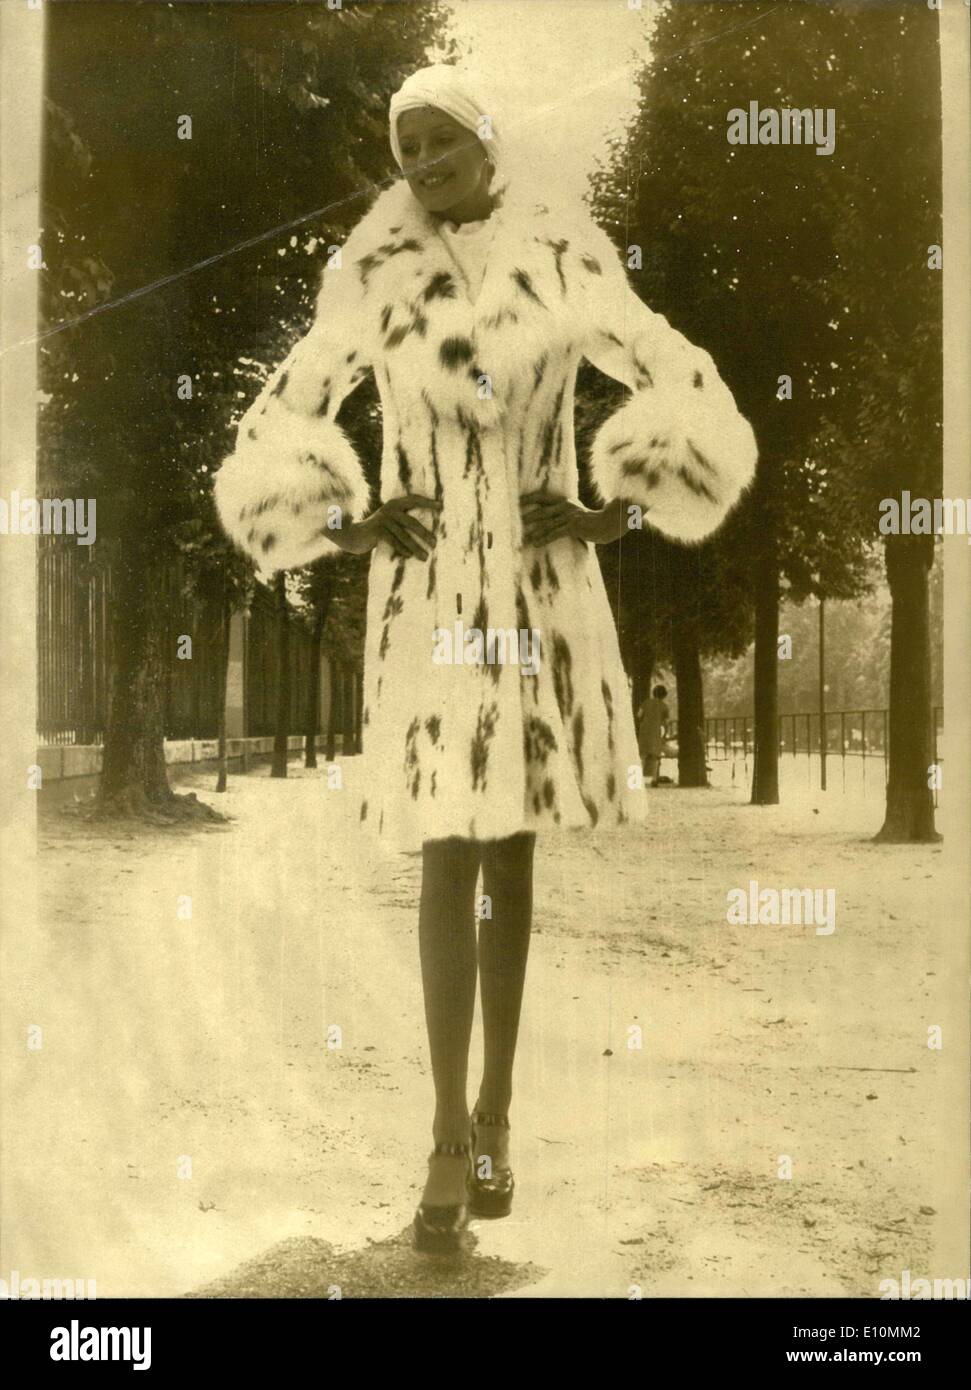 Juillet 31, 1973 - Conçu par Jean-Paul Avizou pour André Sauzaie's collection, ce manteau de vison avec col et poignets renard est faite pour l'enfant à froid les femmes qui souhaitent être élégamment habillé l'hiver prochain. Banque D'Images